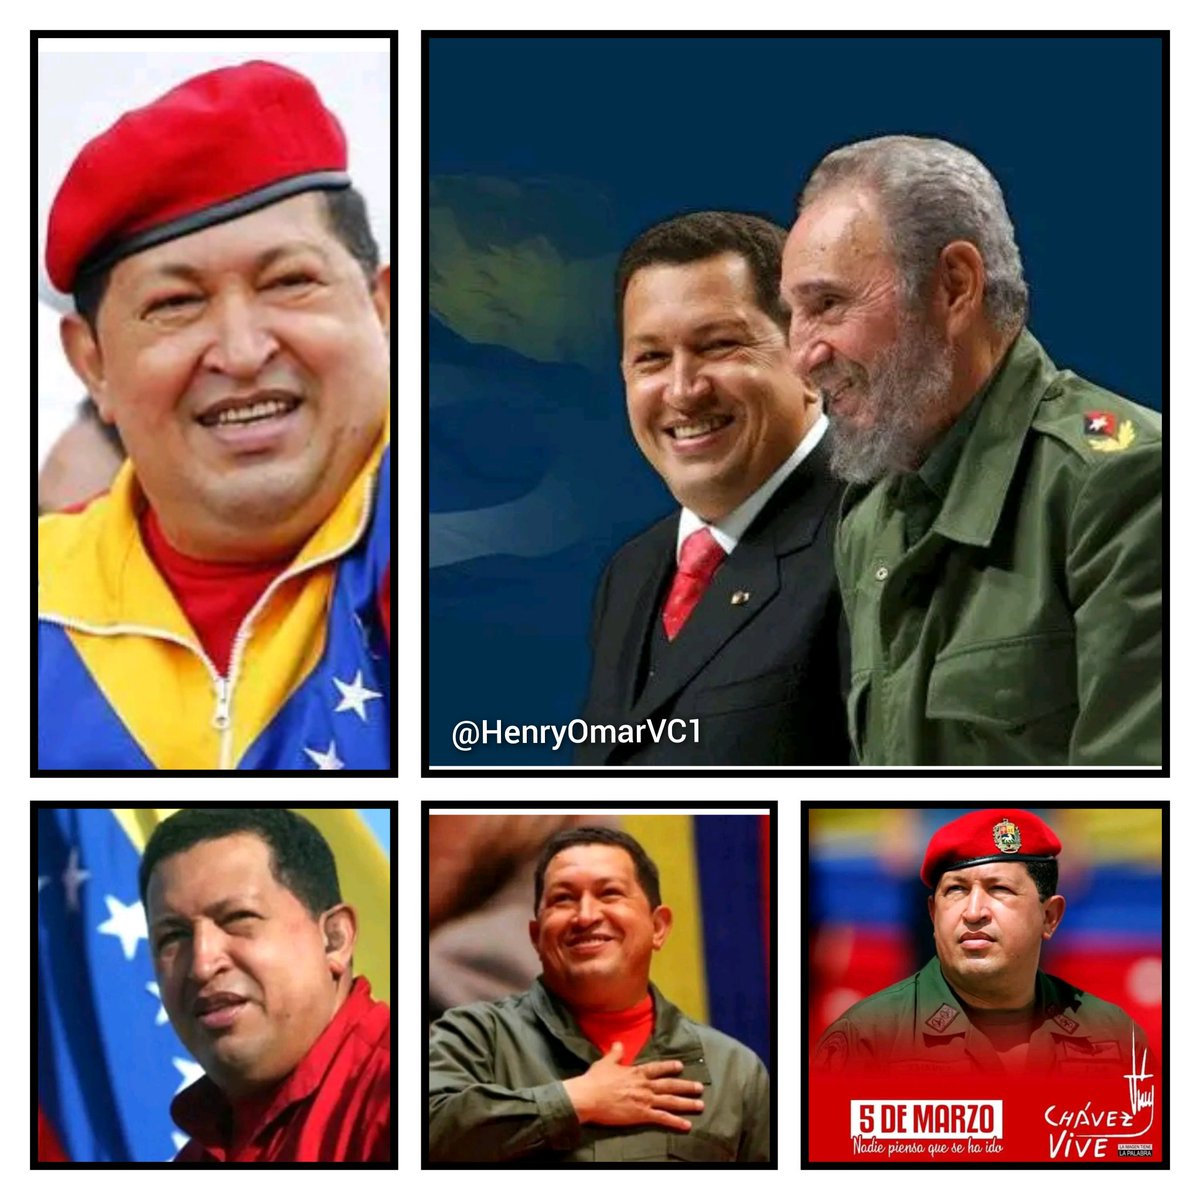 @DrRobertoMOjeda @DiazCanelB @PartidoPCC @PresidenciaCuba @IzquierdaUnid15 @DeZurdaTeam_ @aylinalvarezG @embacubaven @EmbaVECuba @CubaMINREX @cubacooperaven #ChavezVive 
#ChavezCorazonDelPueblo